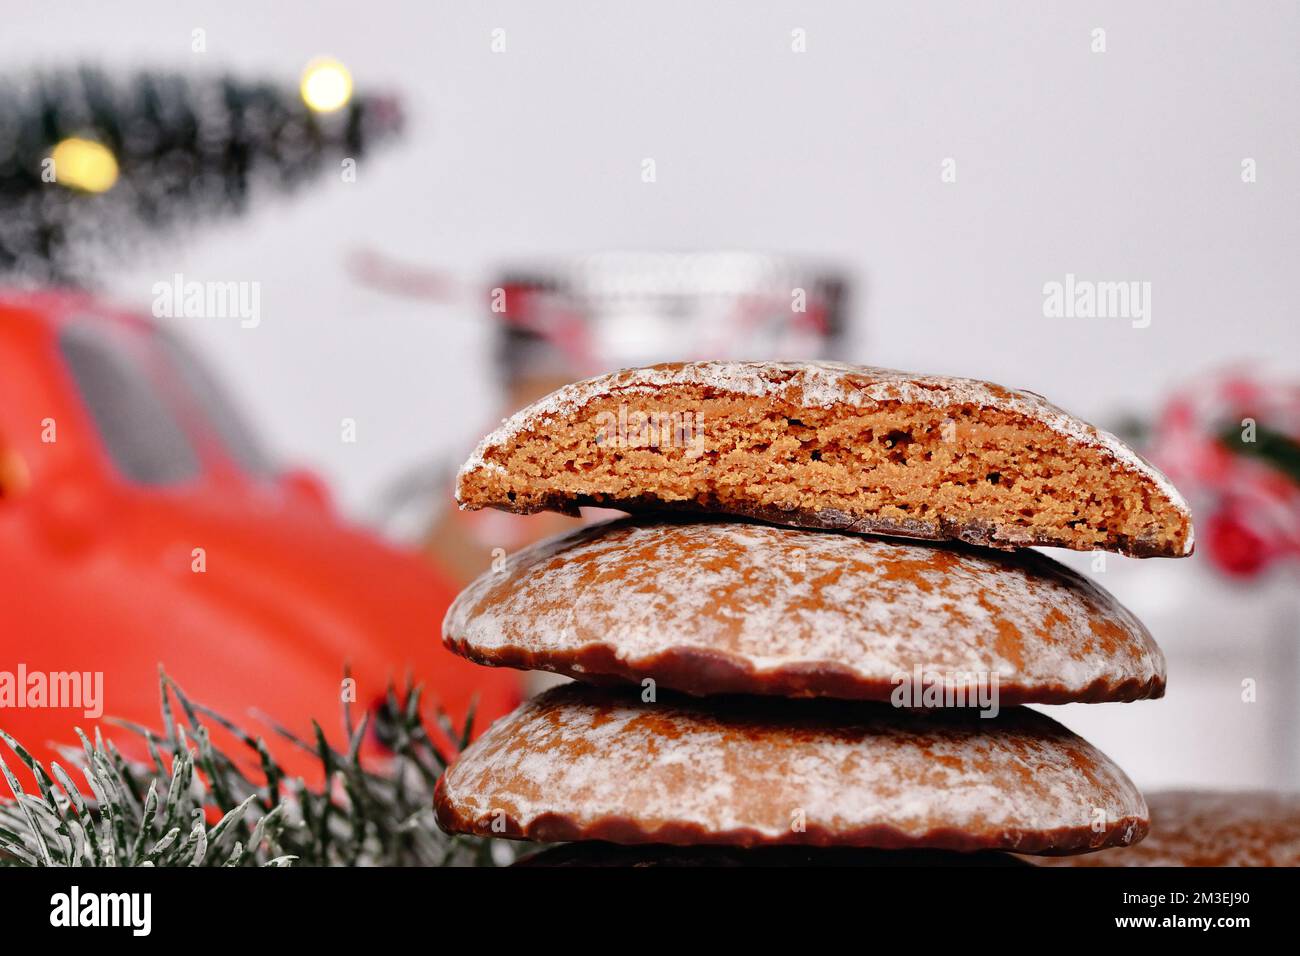 All'interno del tradizionale biscotto tedesco di Natale con pan di zenzero rotondo chiamato 'Lebkuchen' Foto Stock